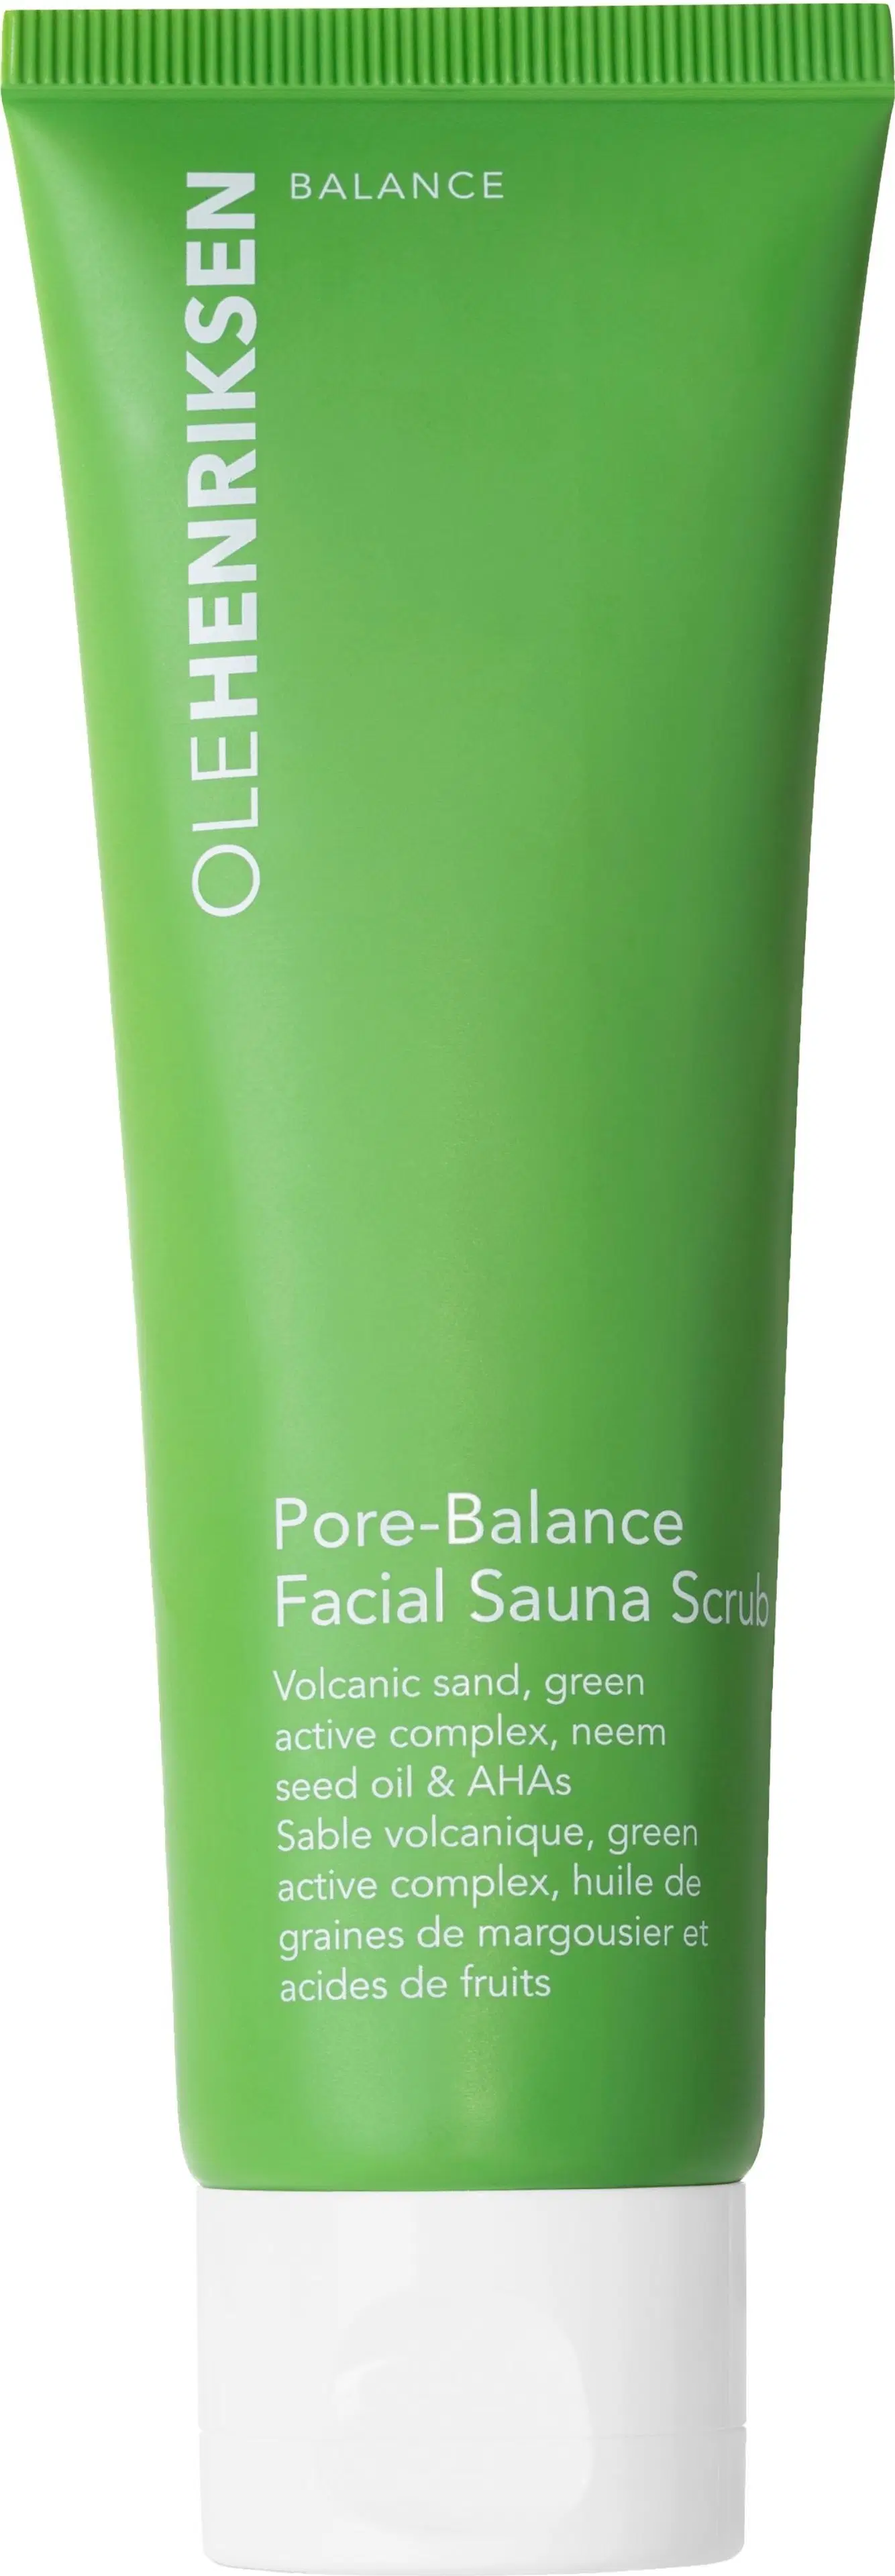 OleHenriksen Balance Pore-Balance Facial Sauna Scrub kasvokuorinta 85 ml